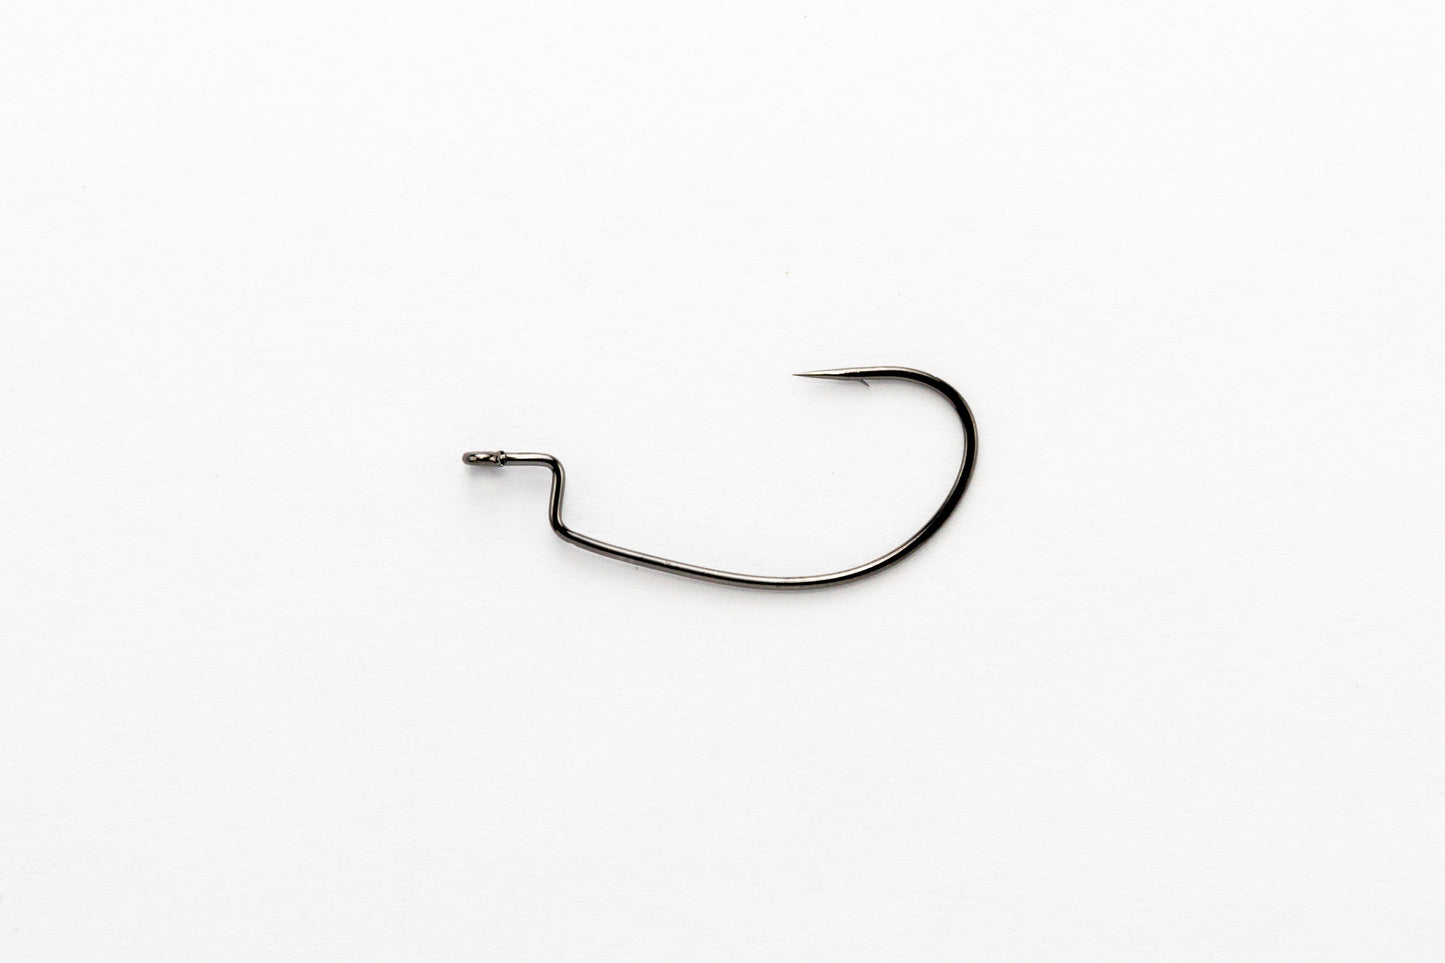 Offset Hook - Decoy - Kg Hook Wide Worm 25